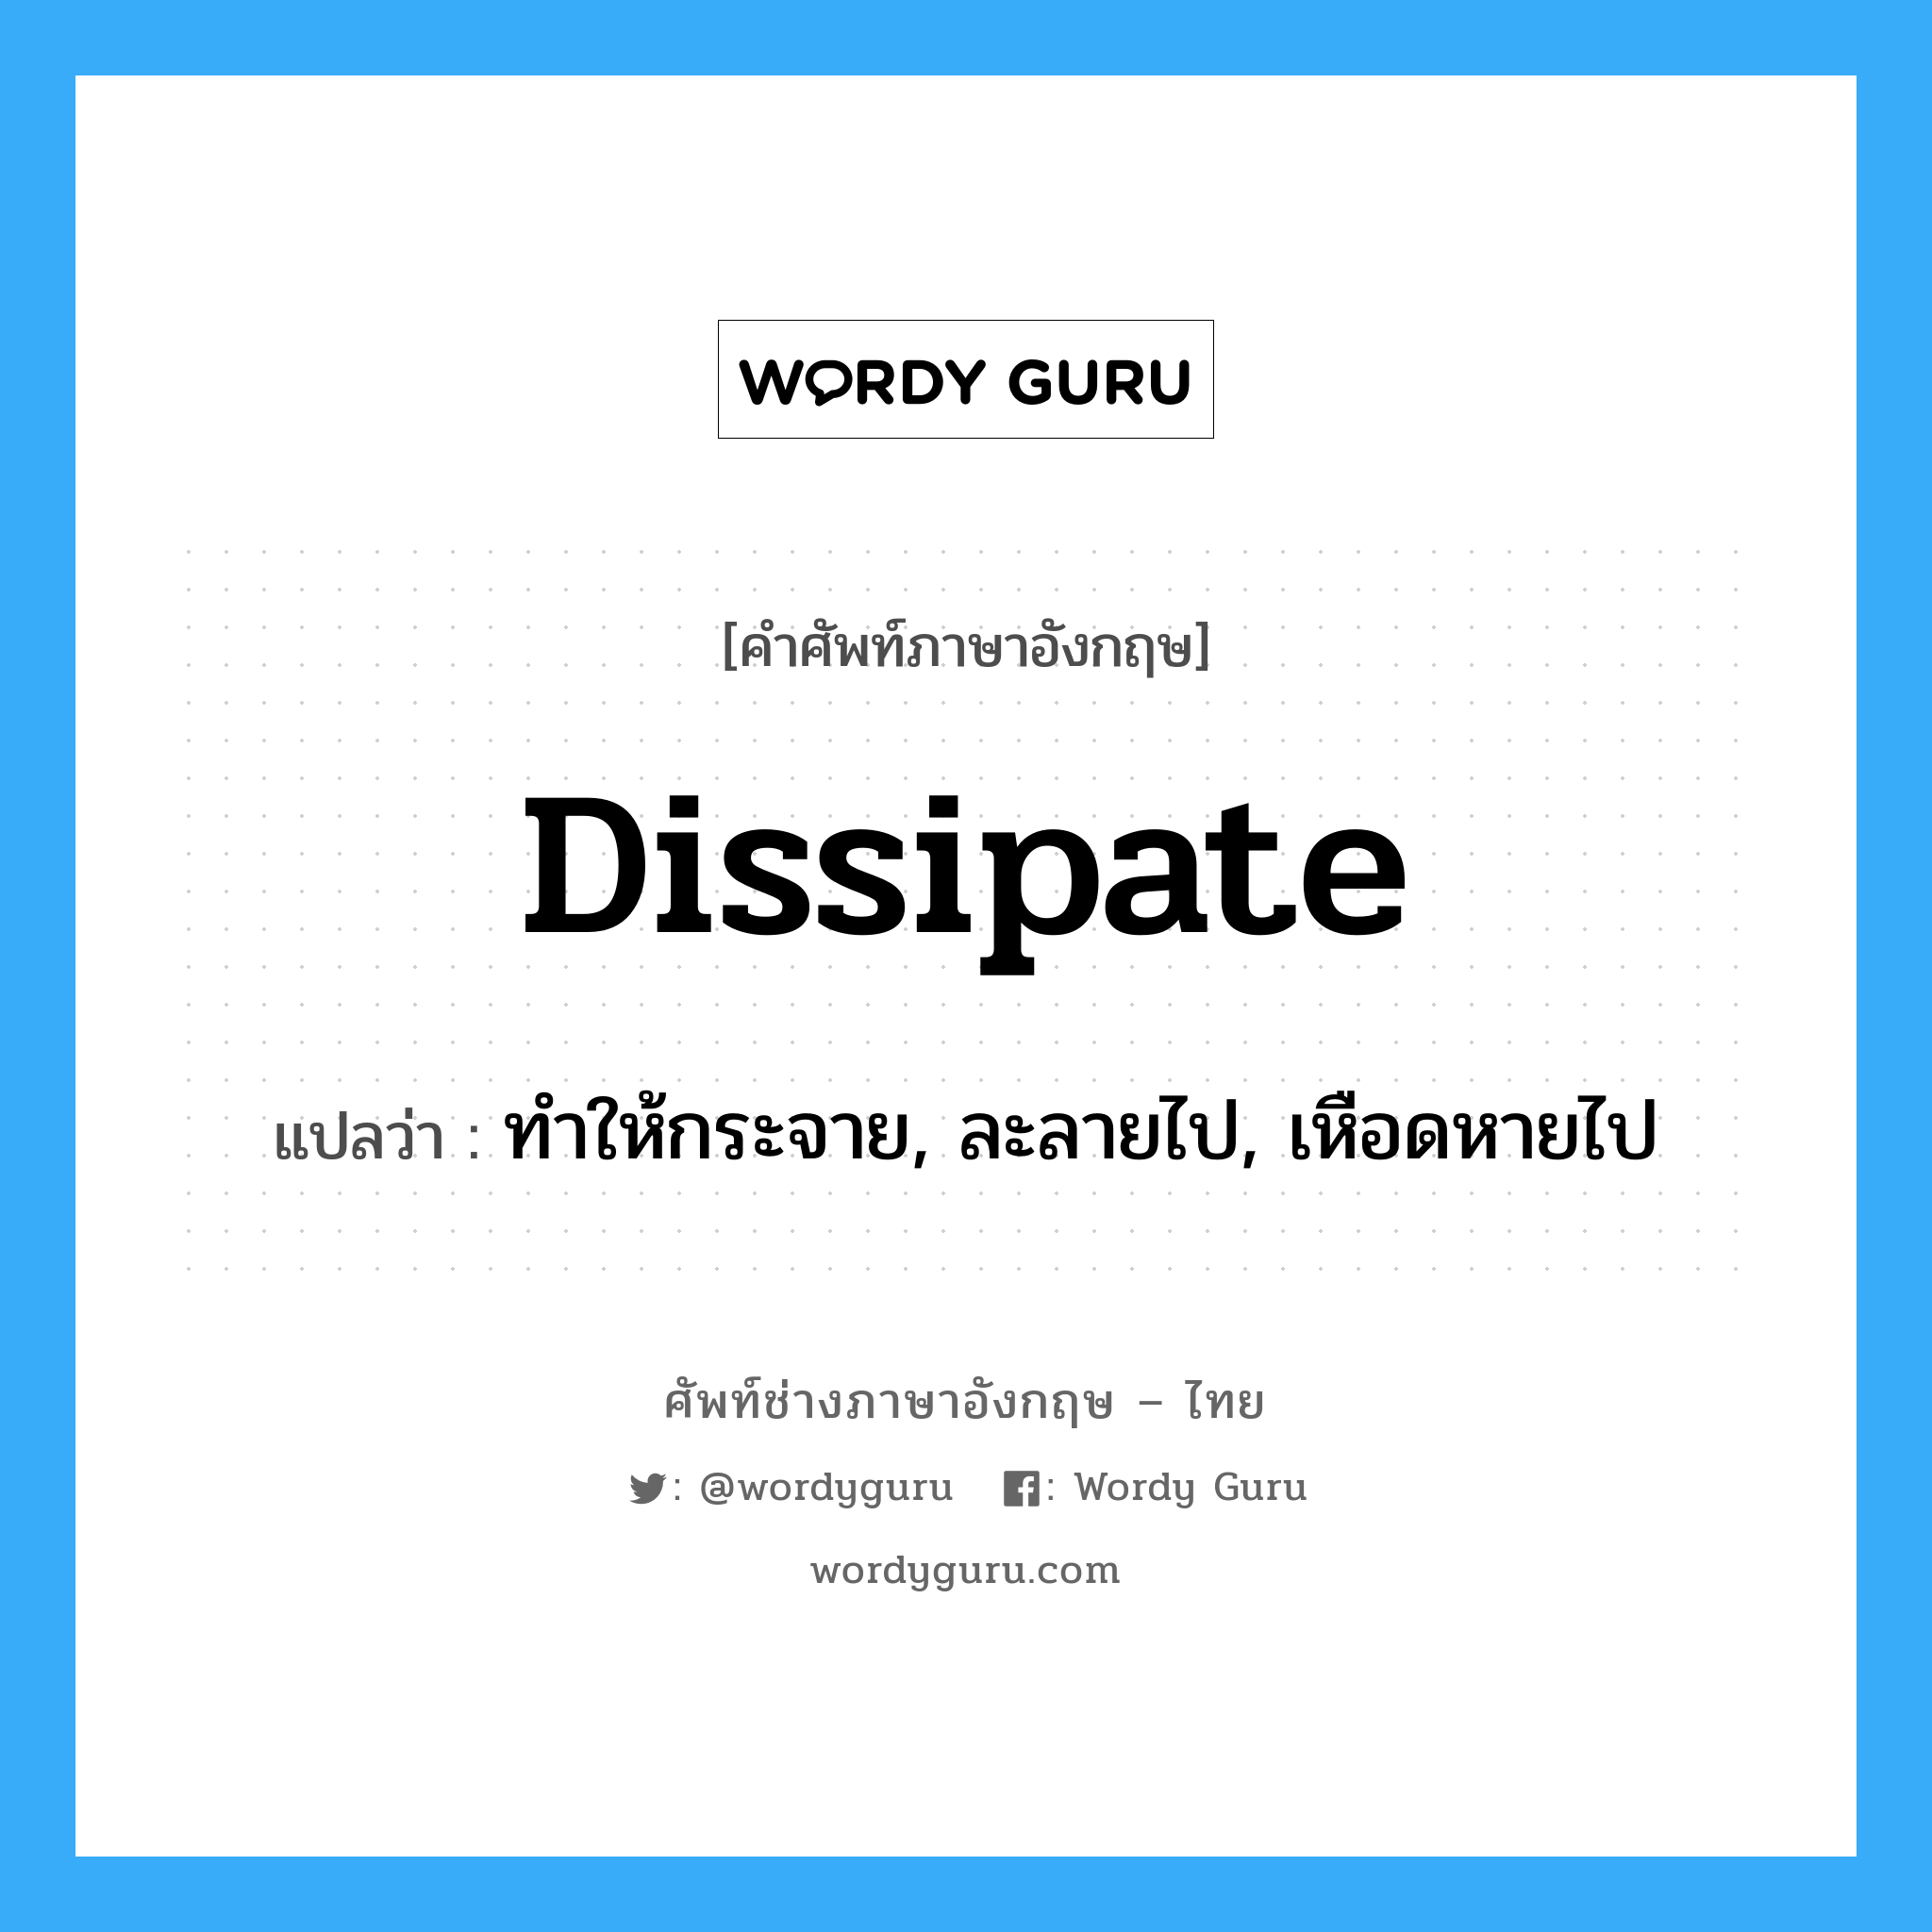 dissipate แปลว่า?, คำศัพท์ช่างภาษาอังกฤษ - ไทย dissipate คำศัพท์ภาษาอังกฤษ dissipate แปลว่า ทำให้กระจาย, ละลายไป, เหือดหายไป